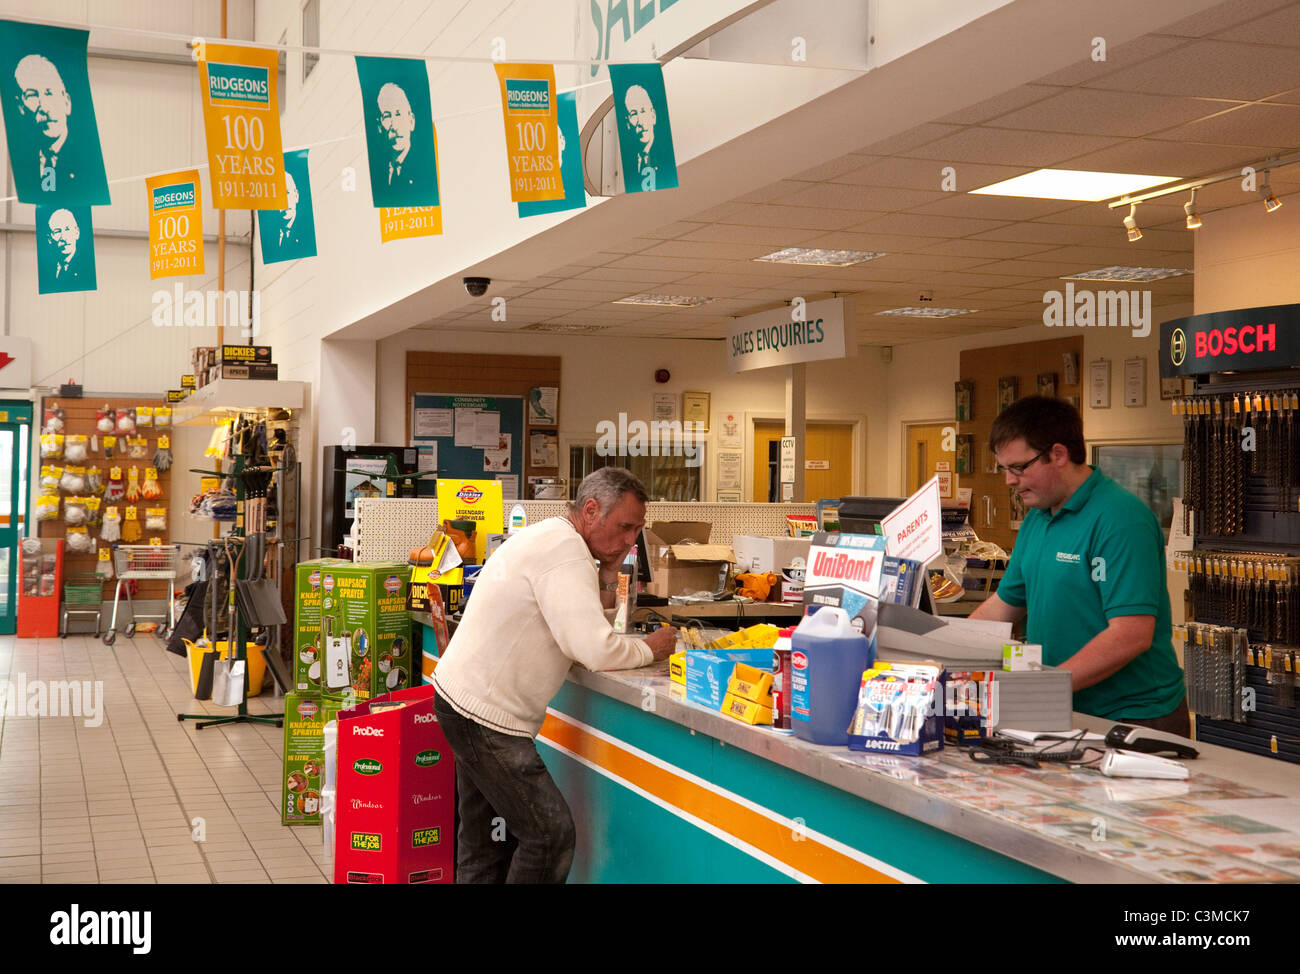 Builders merchant UK; A customer buying goods in Ridgeons builders merchants store, Newmarket Suffolk UK Stock Photo